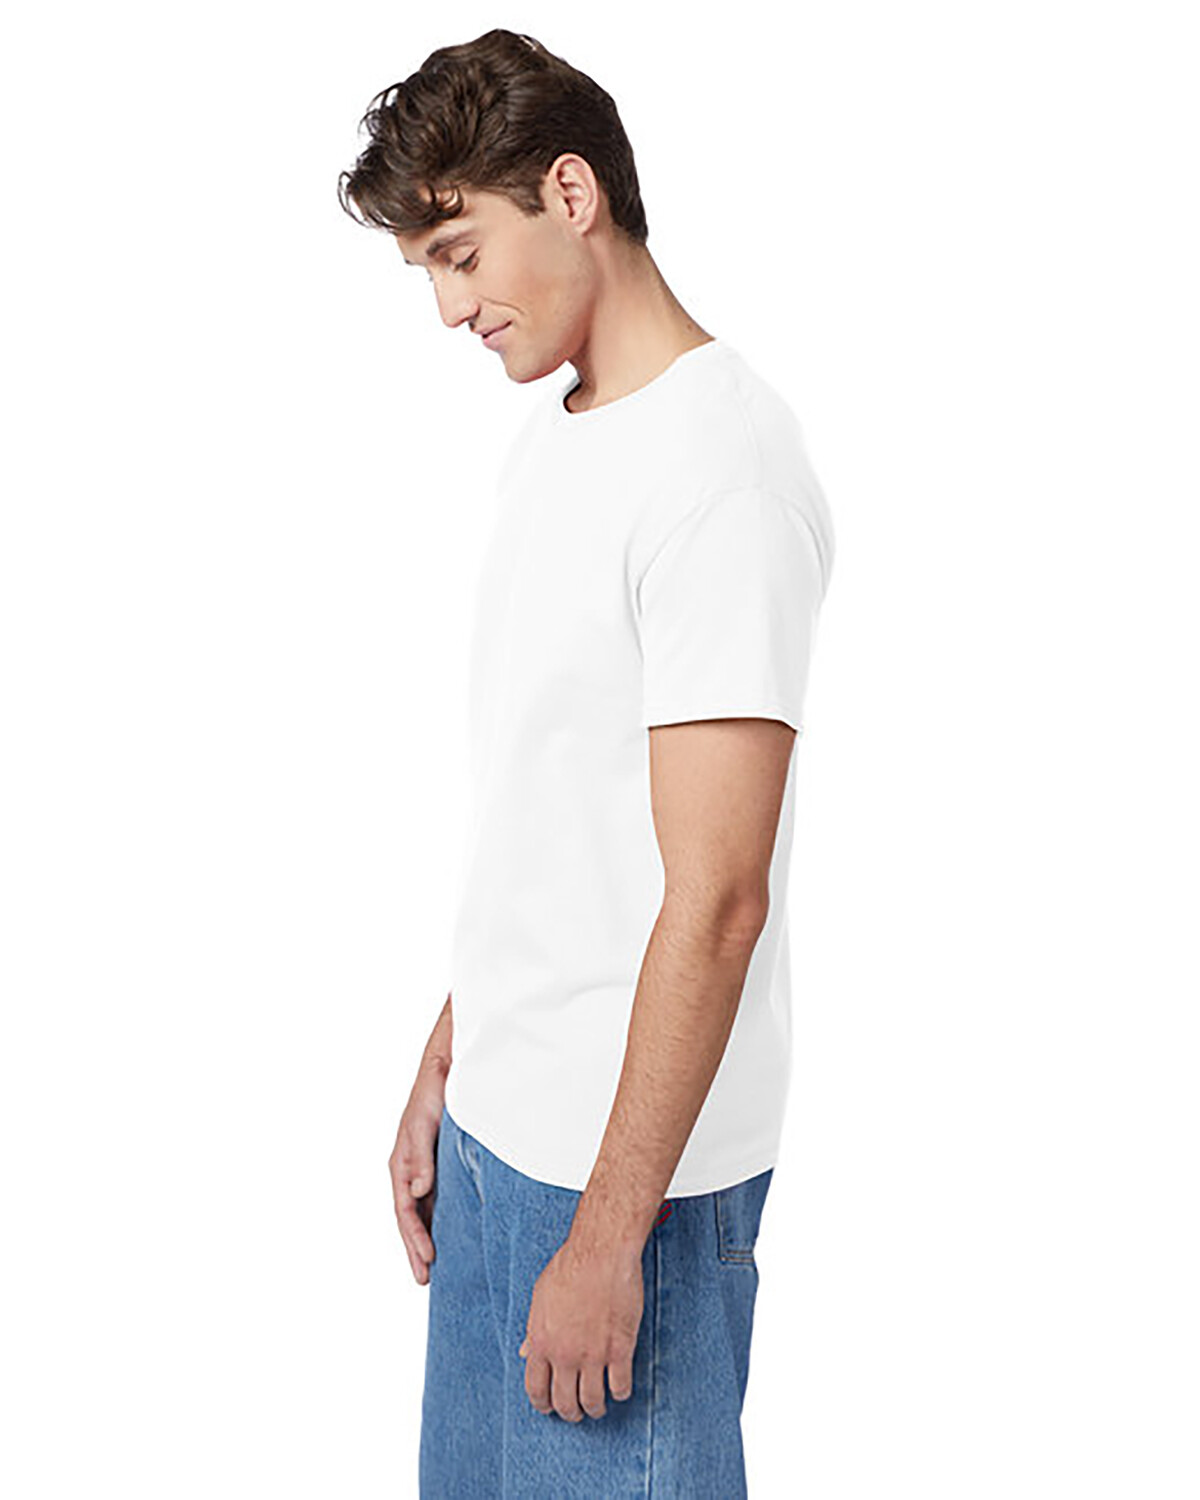 plejeforældre Forbløffe rookie Hanes 5250T Mens Tagless T-Shirt ComfortSoft 100% Cotton | Buy Blank or  Print Logo